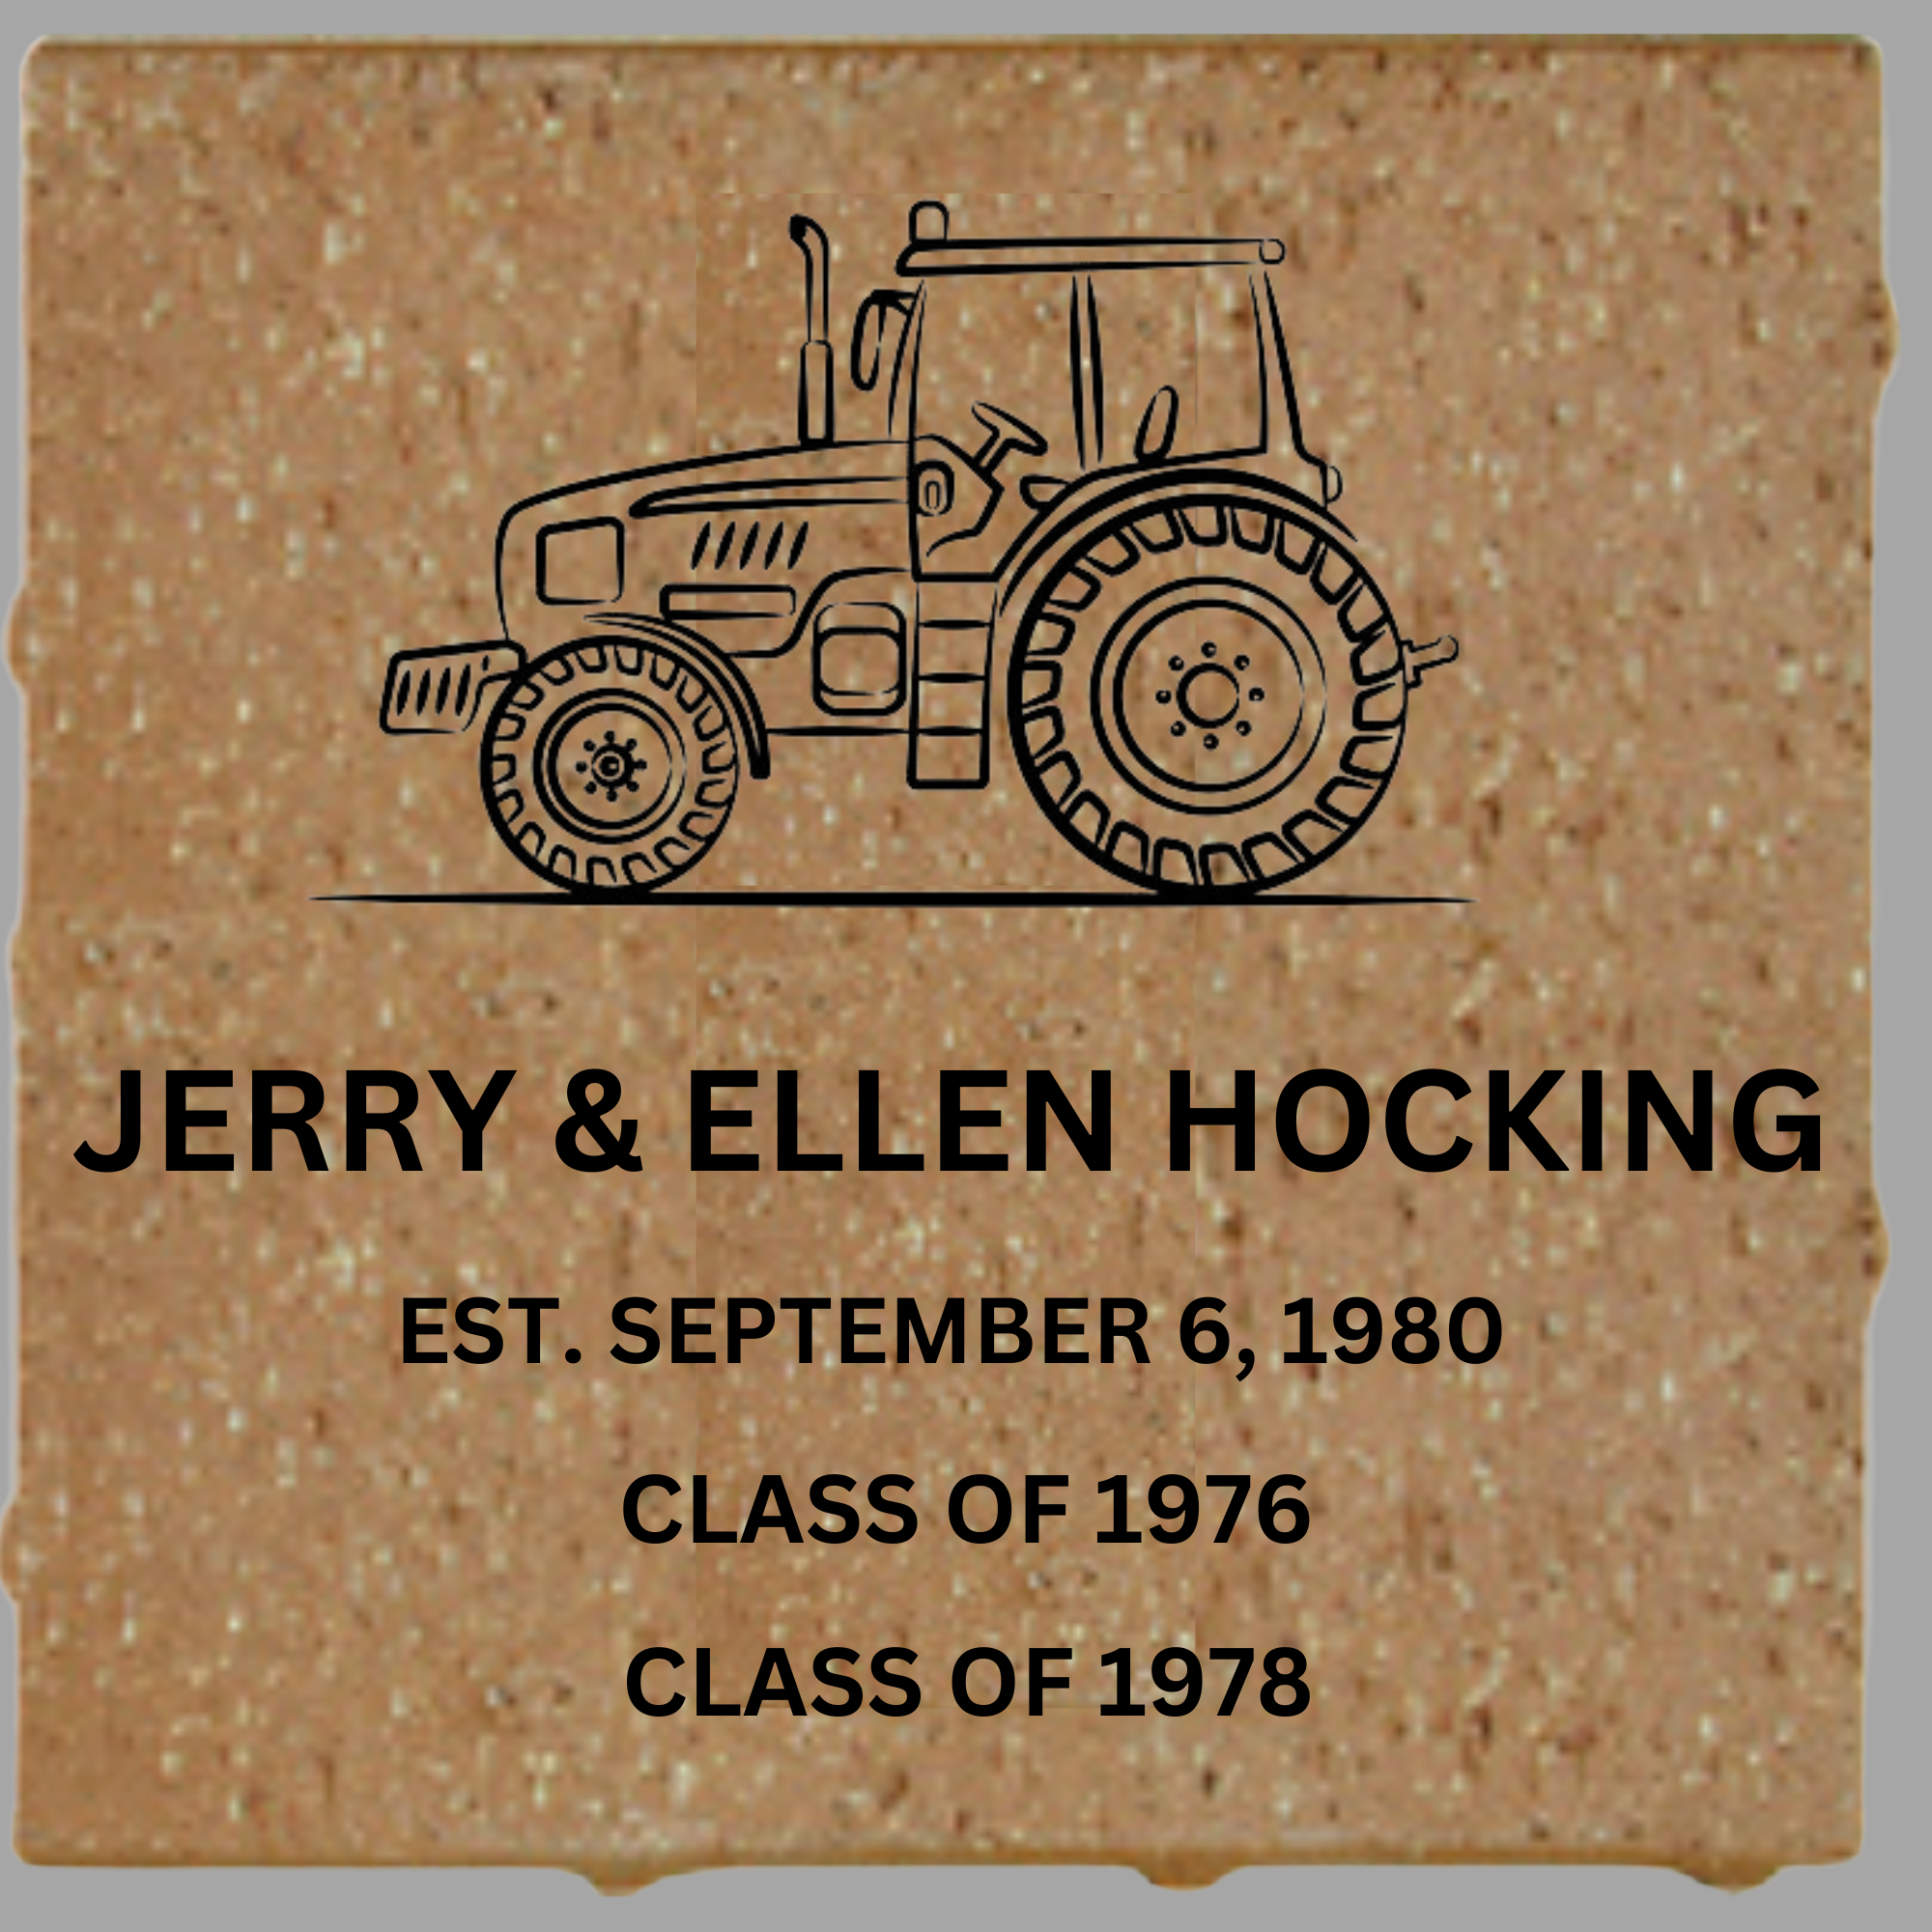 Jerry & Ellen Hocking